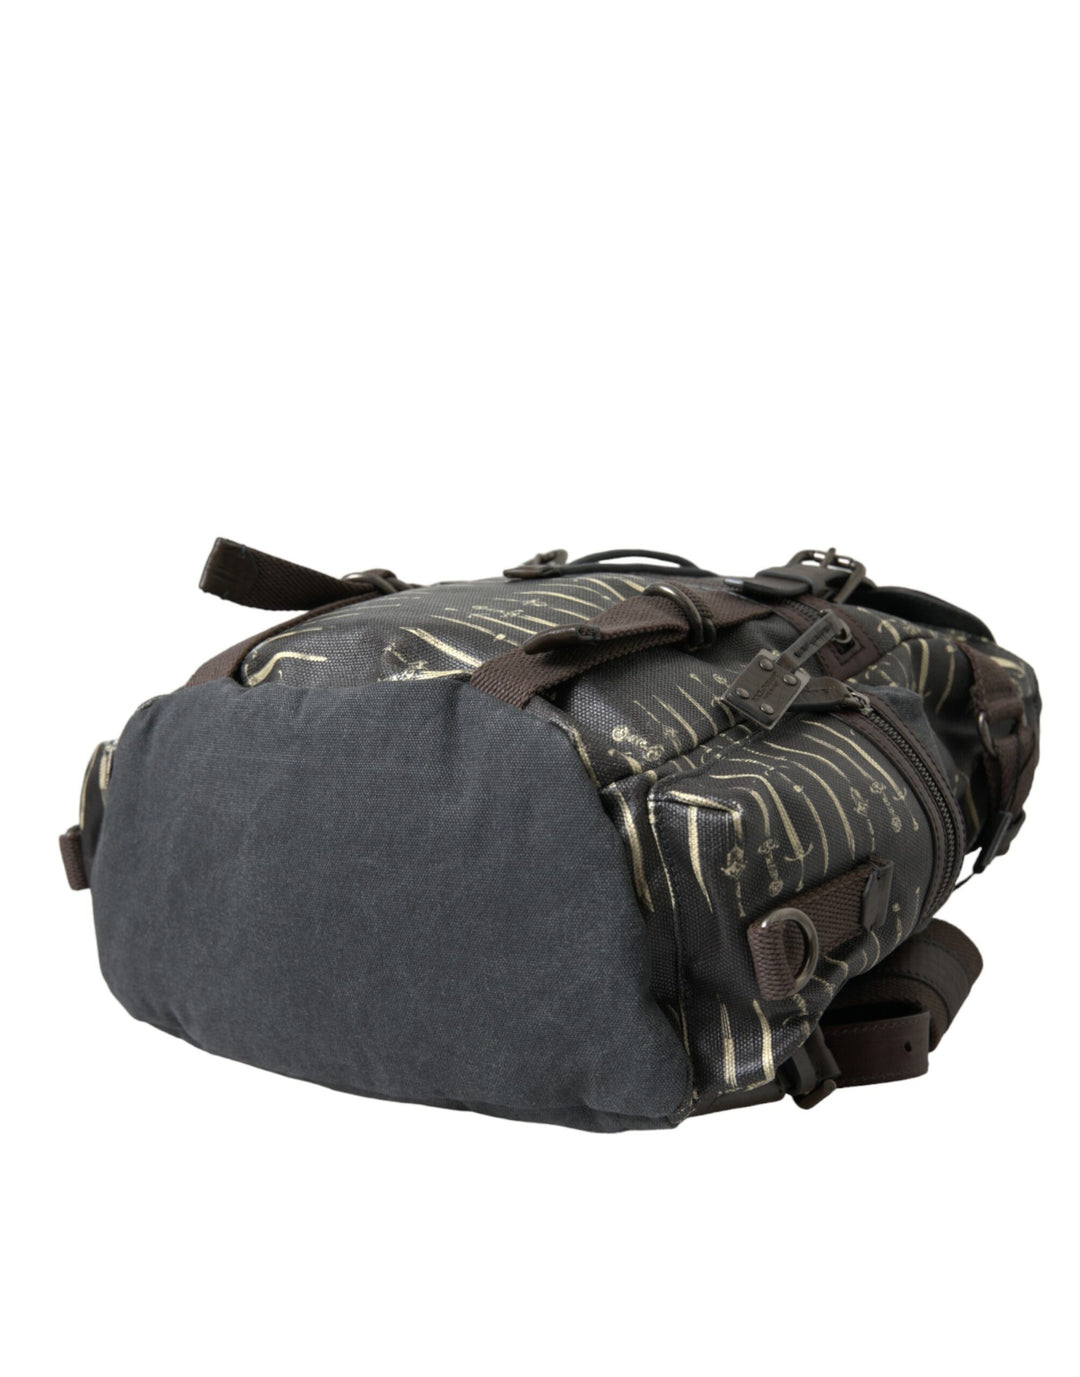 Dolce & Gabbana Black Brown Canvas Leather Rucksack Backpack Bag